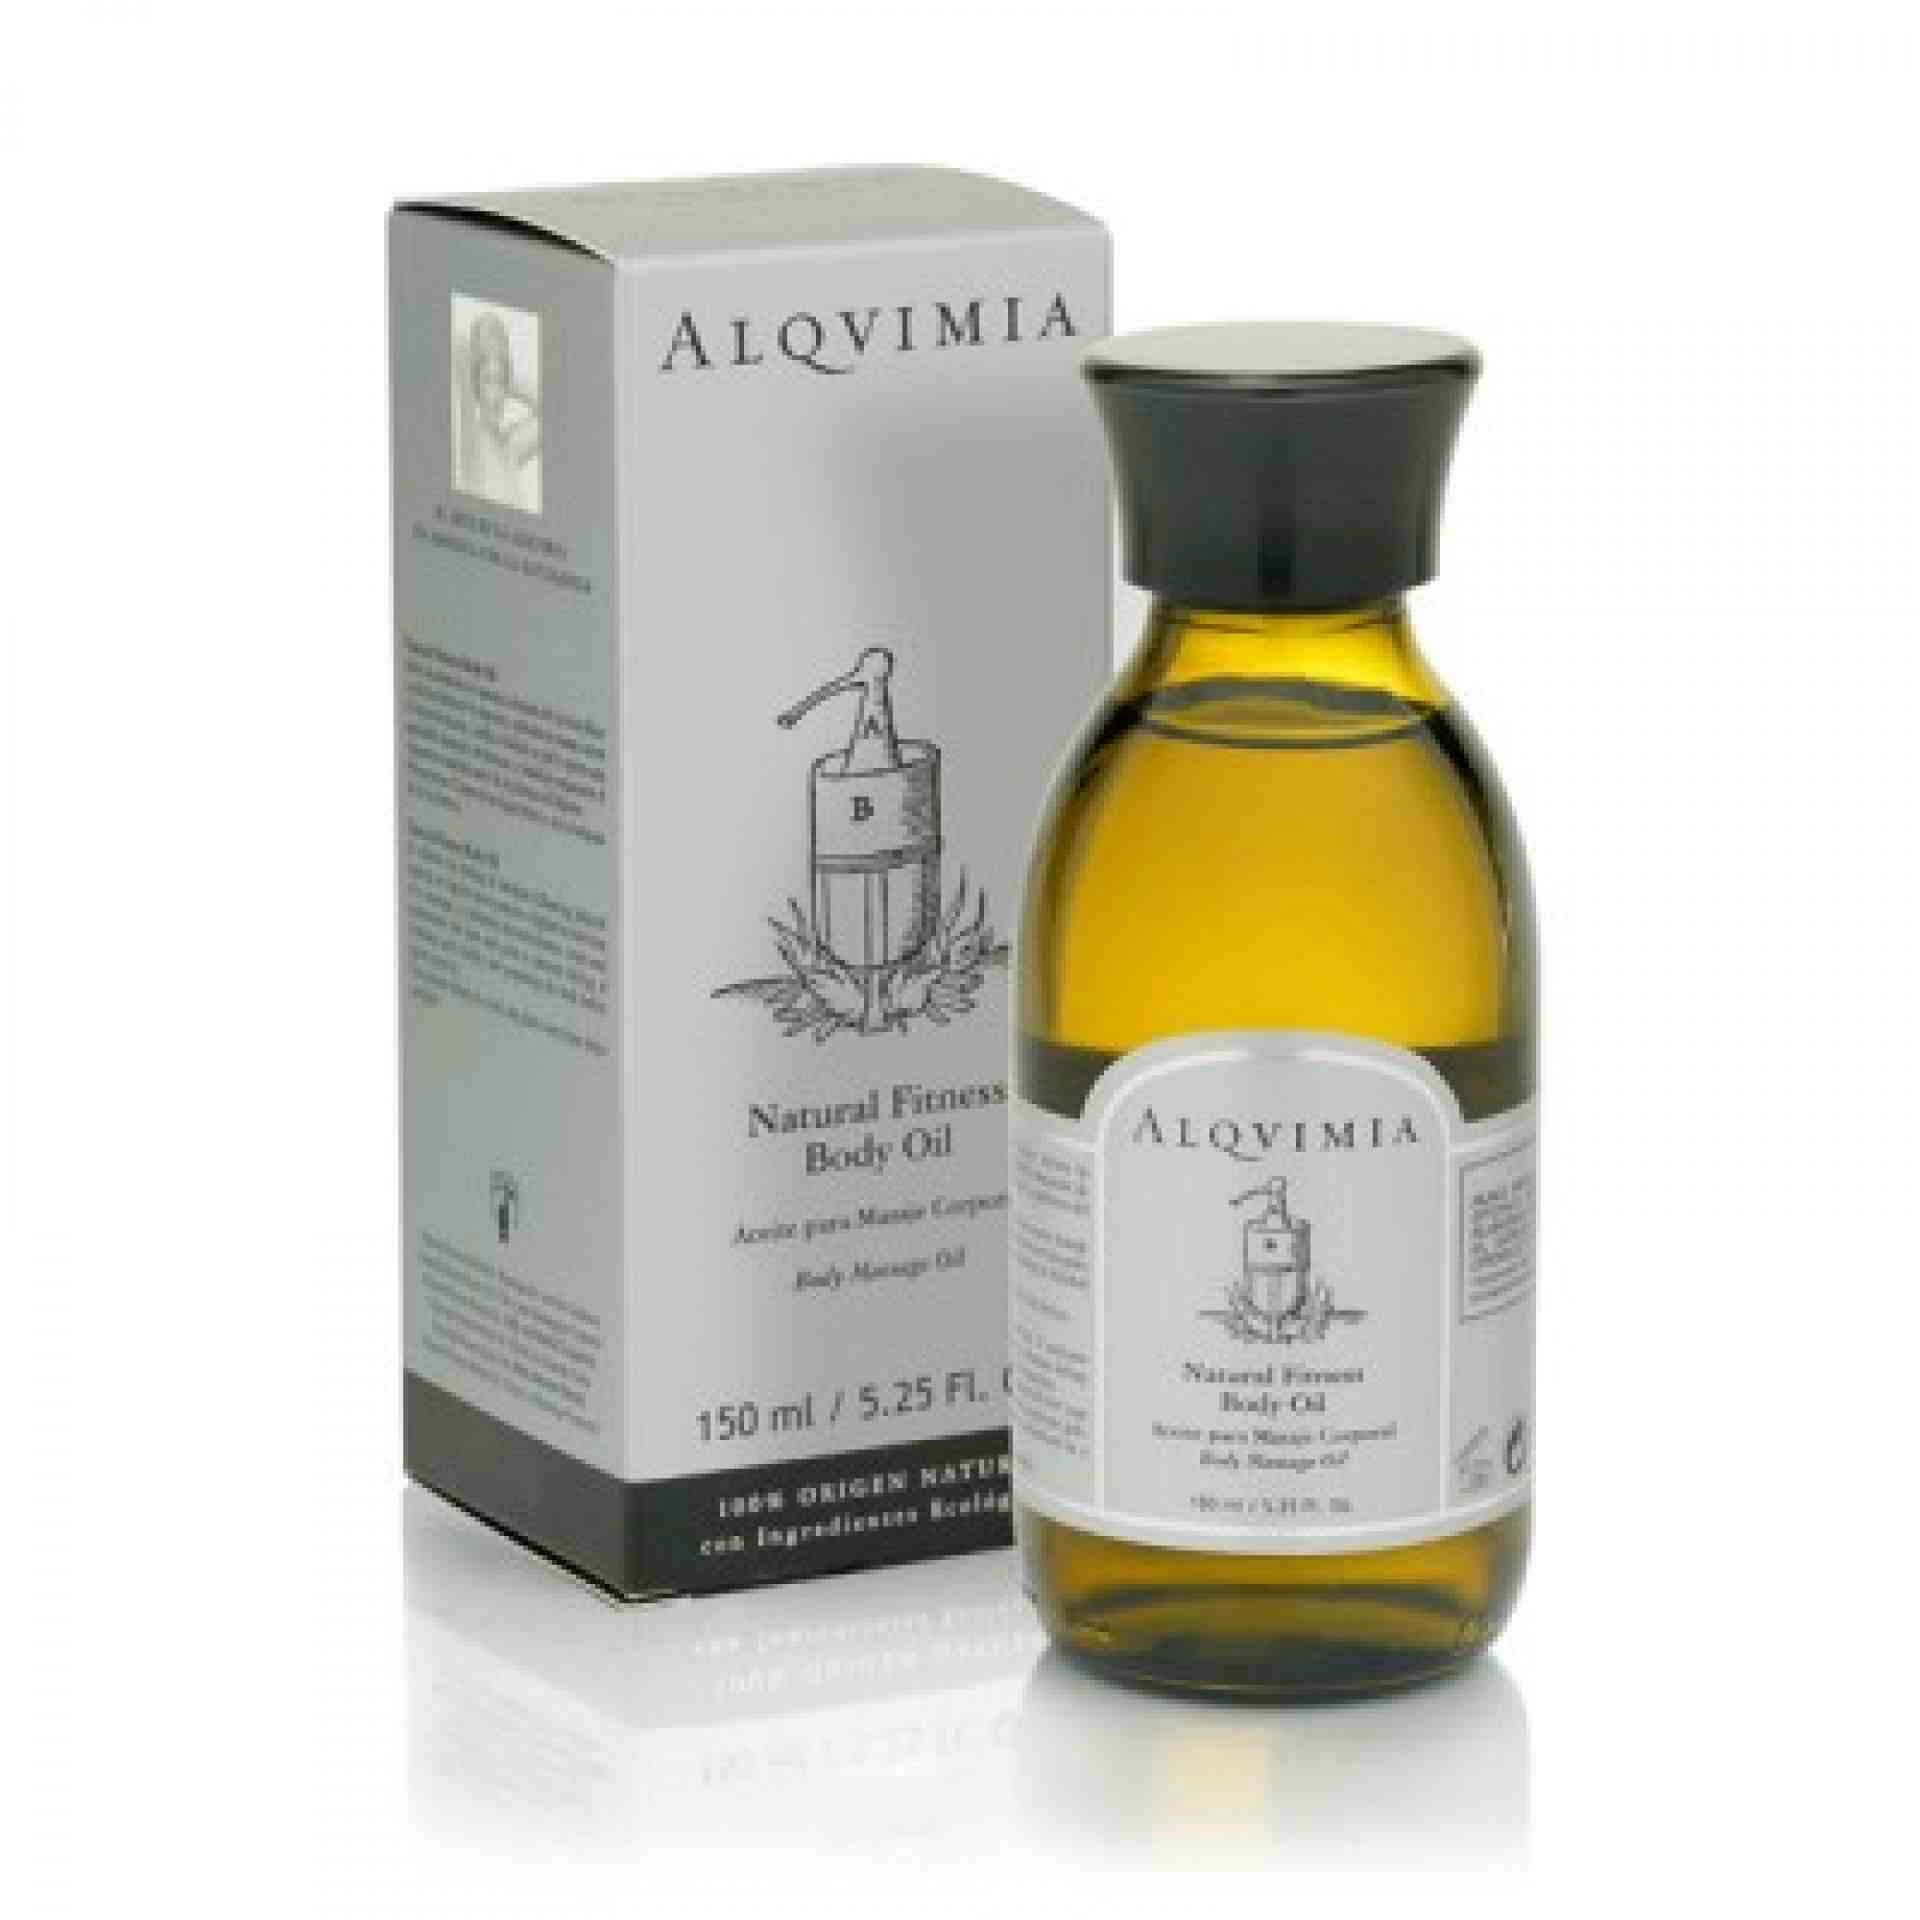 Natural Fitness Body Oil I Aceite refrescante 150ml - Alqvimia ®